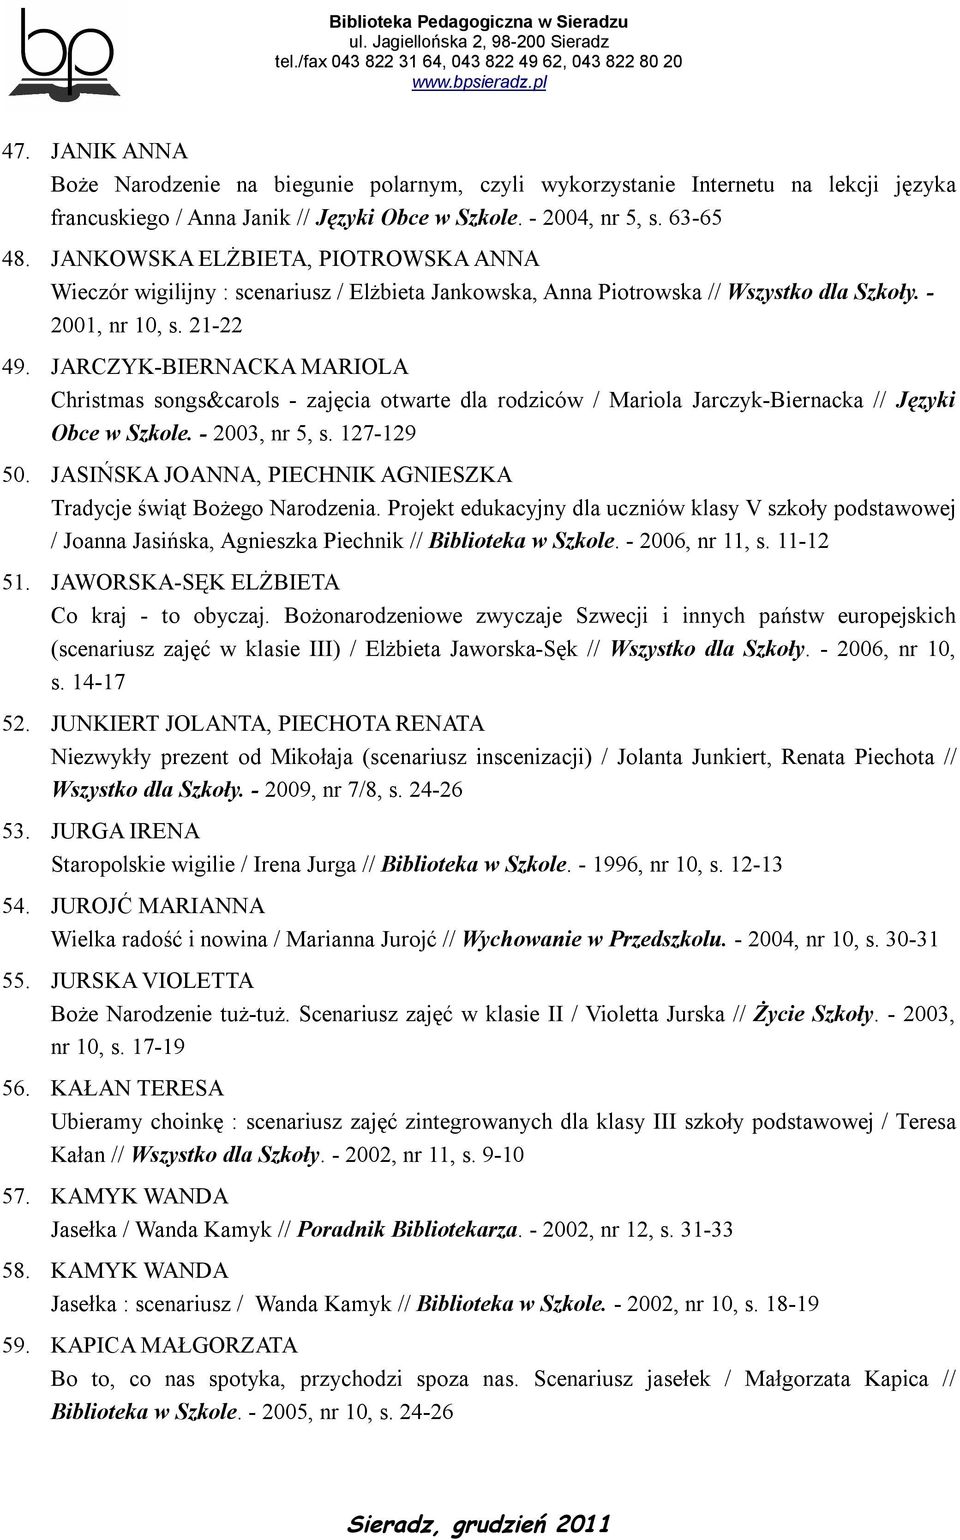 JARCZYK-BIERNACKA MARIOLA Christmas songs&carols - zajęcia otwarte dla rodziców / Mariola Jarczyk-Biernacka // Języki Obce w Szkole. - 2003, nr 5, s. 127-129 50.